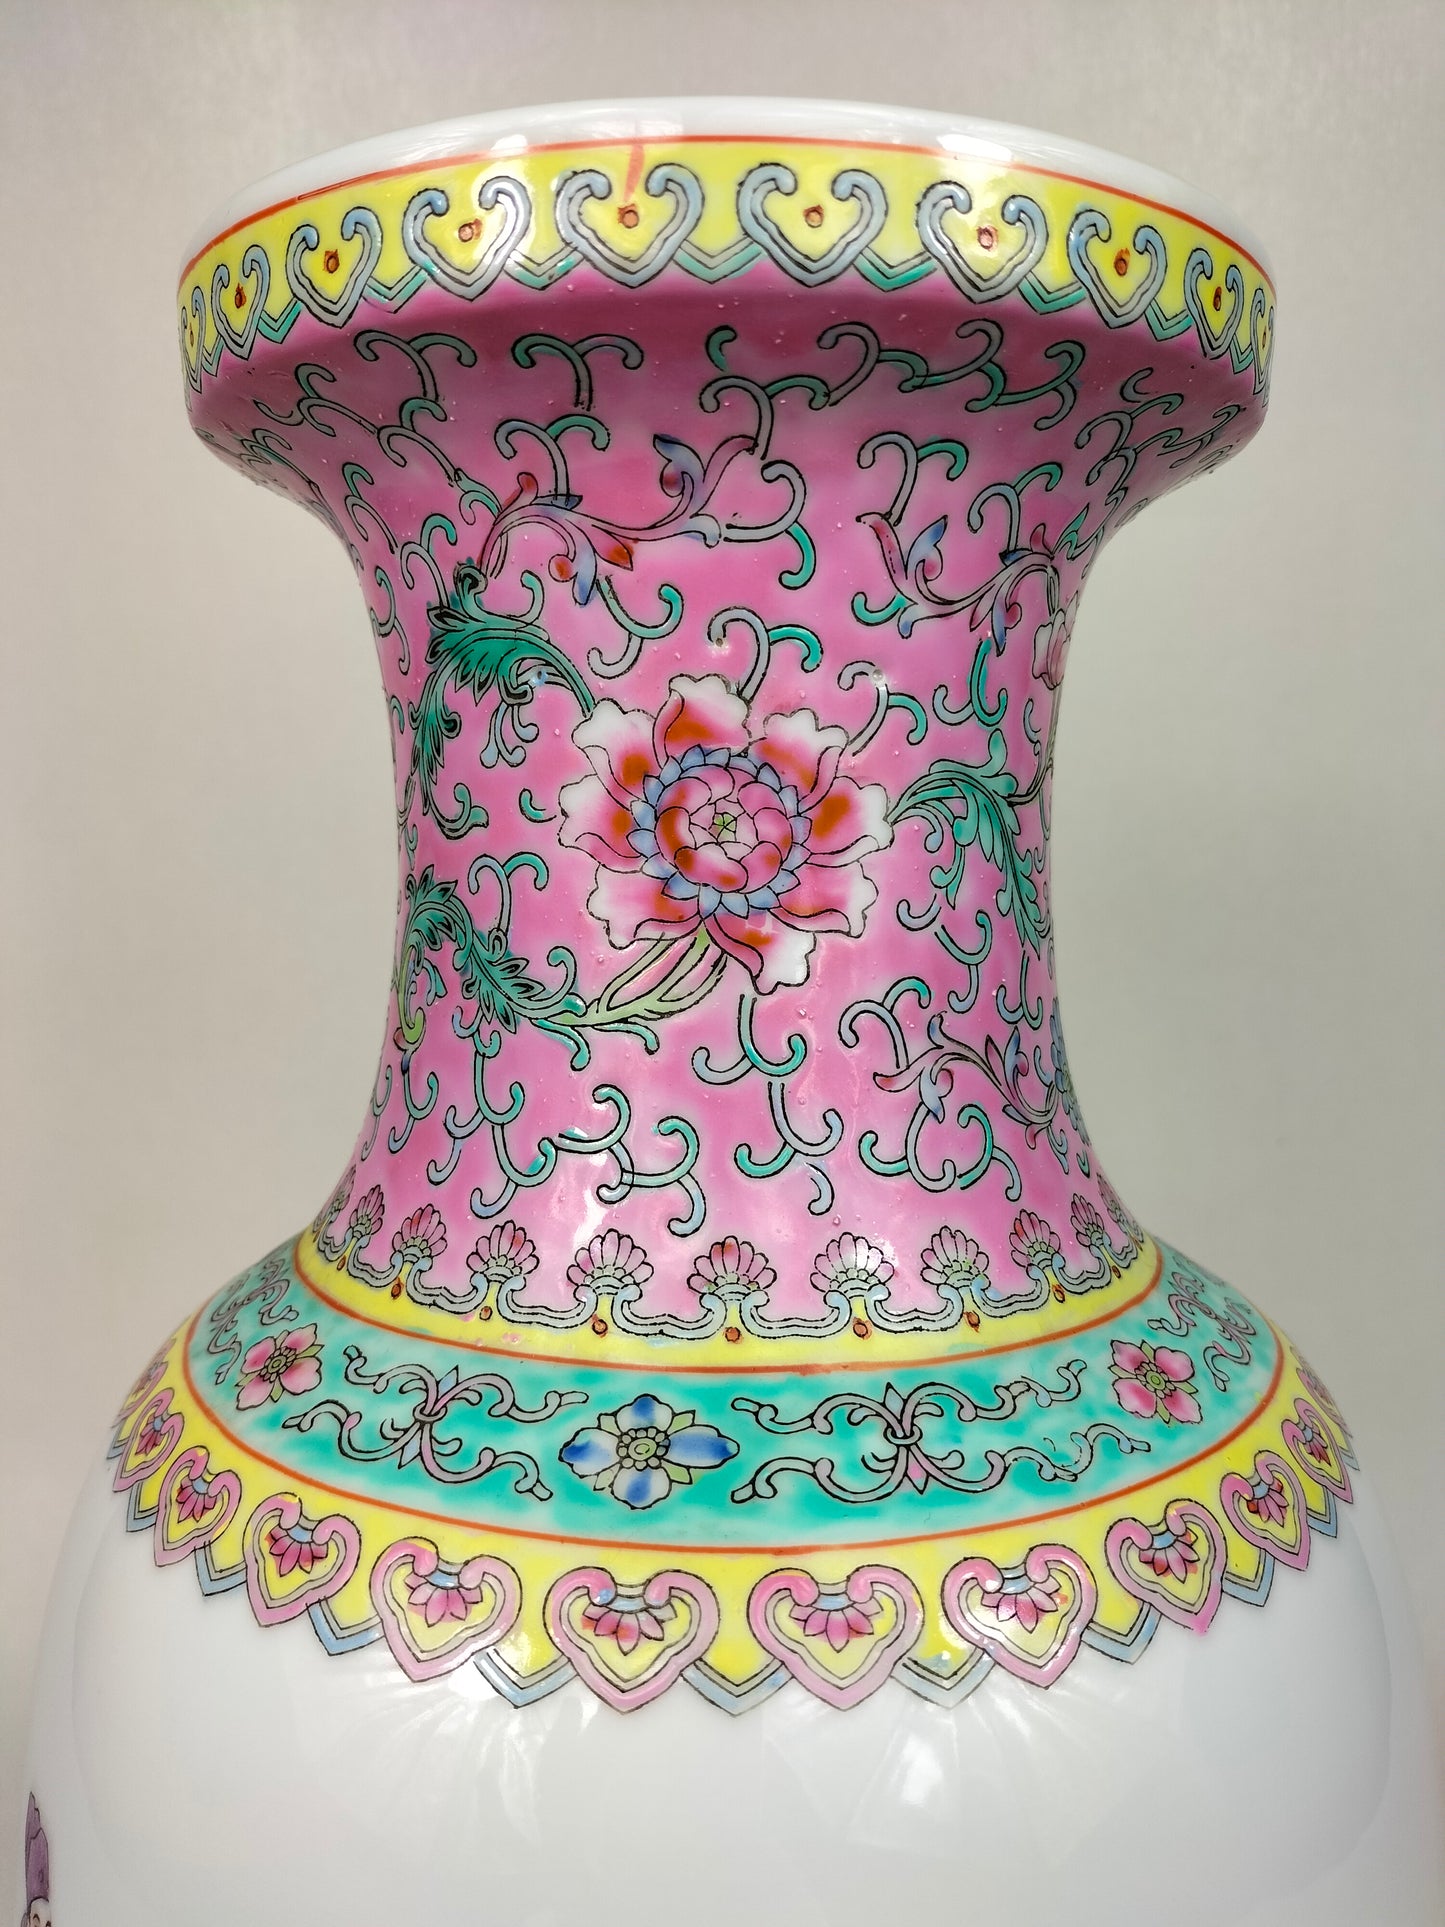 装饰有 8 个神仙的中国粉彩花瓶 // 景德镇 - 20 世纪